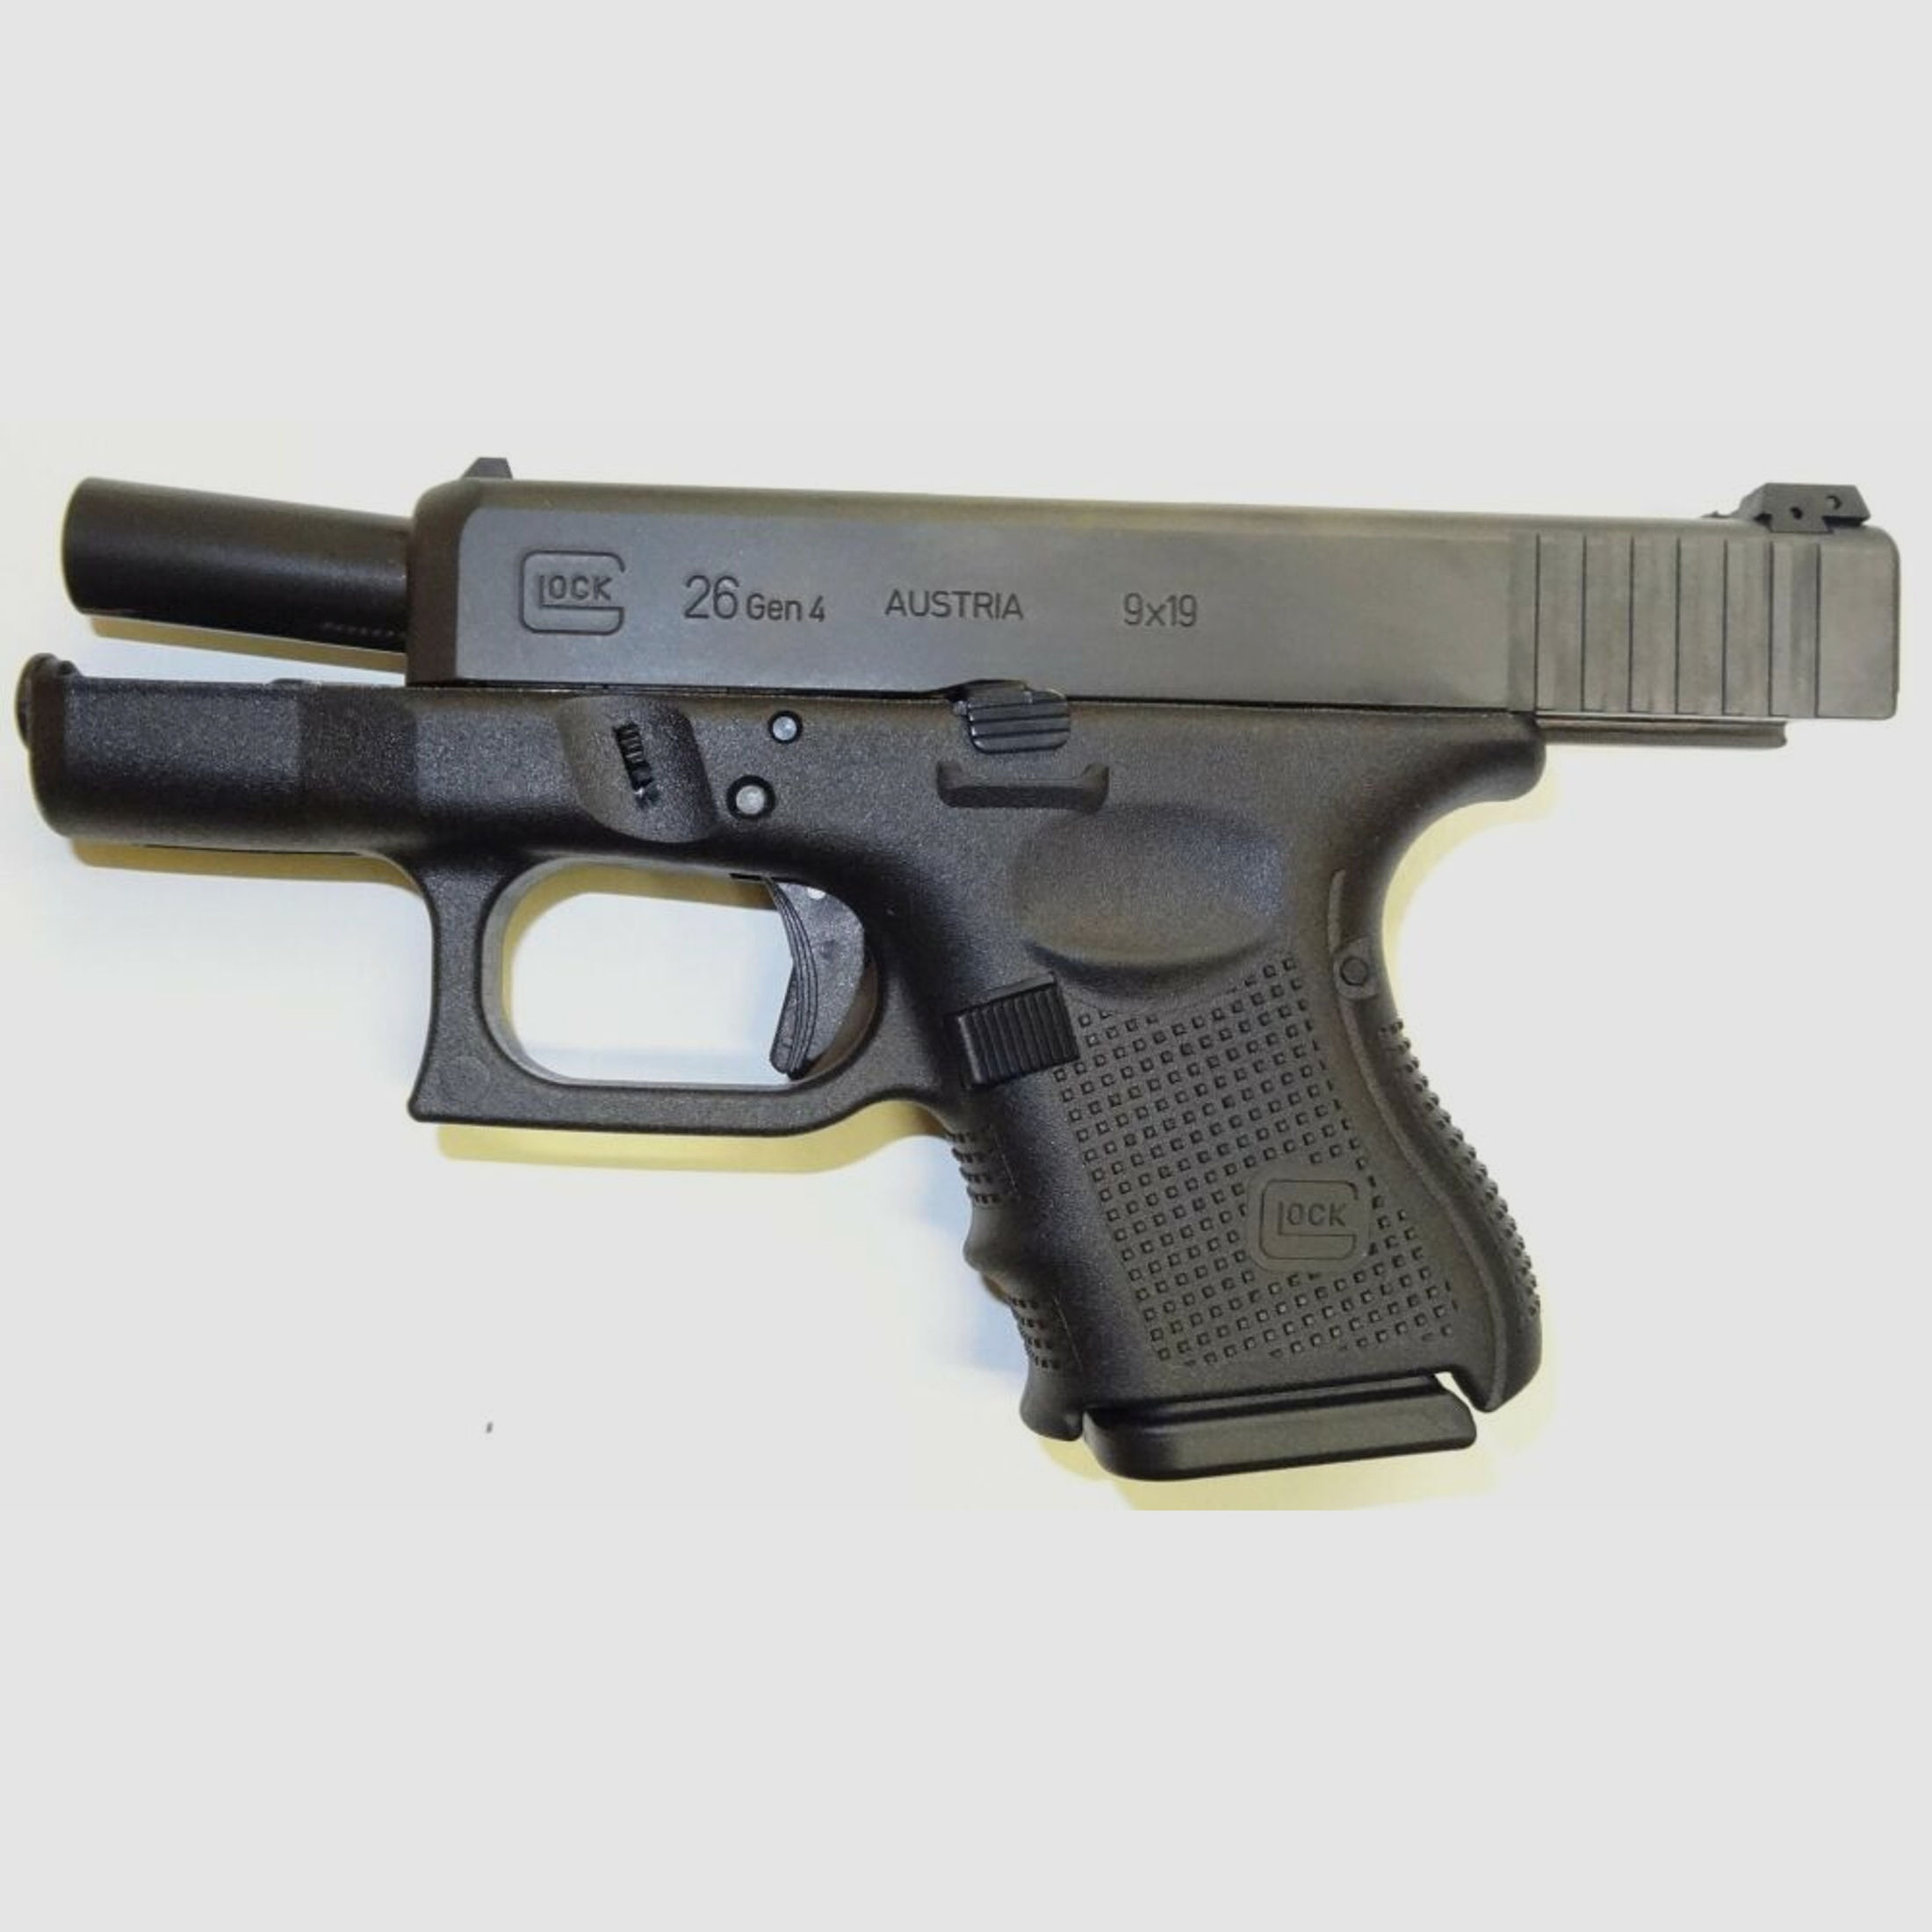 Glock	 Subcompact Pistole Glock 26 Gen4 im Kaliber 9mm Para ( 9x19 ) Inkl. Zubehör